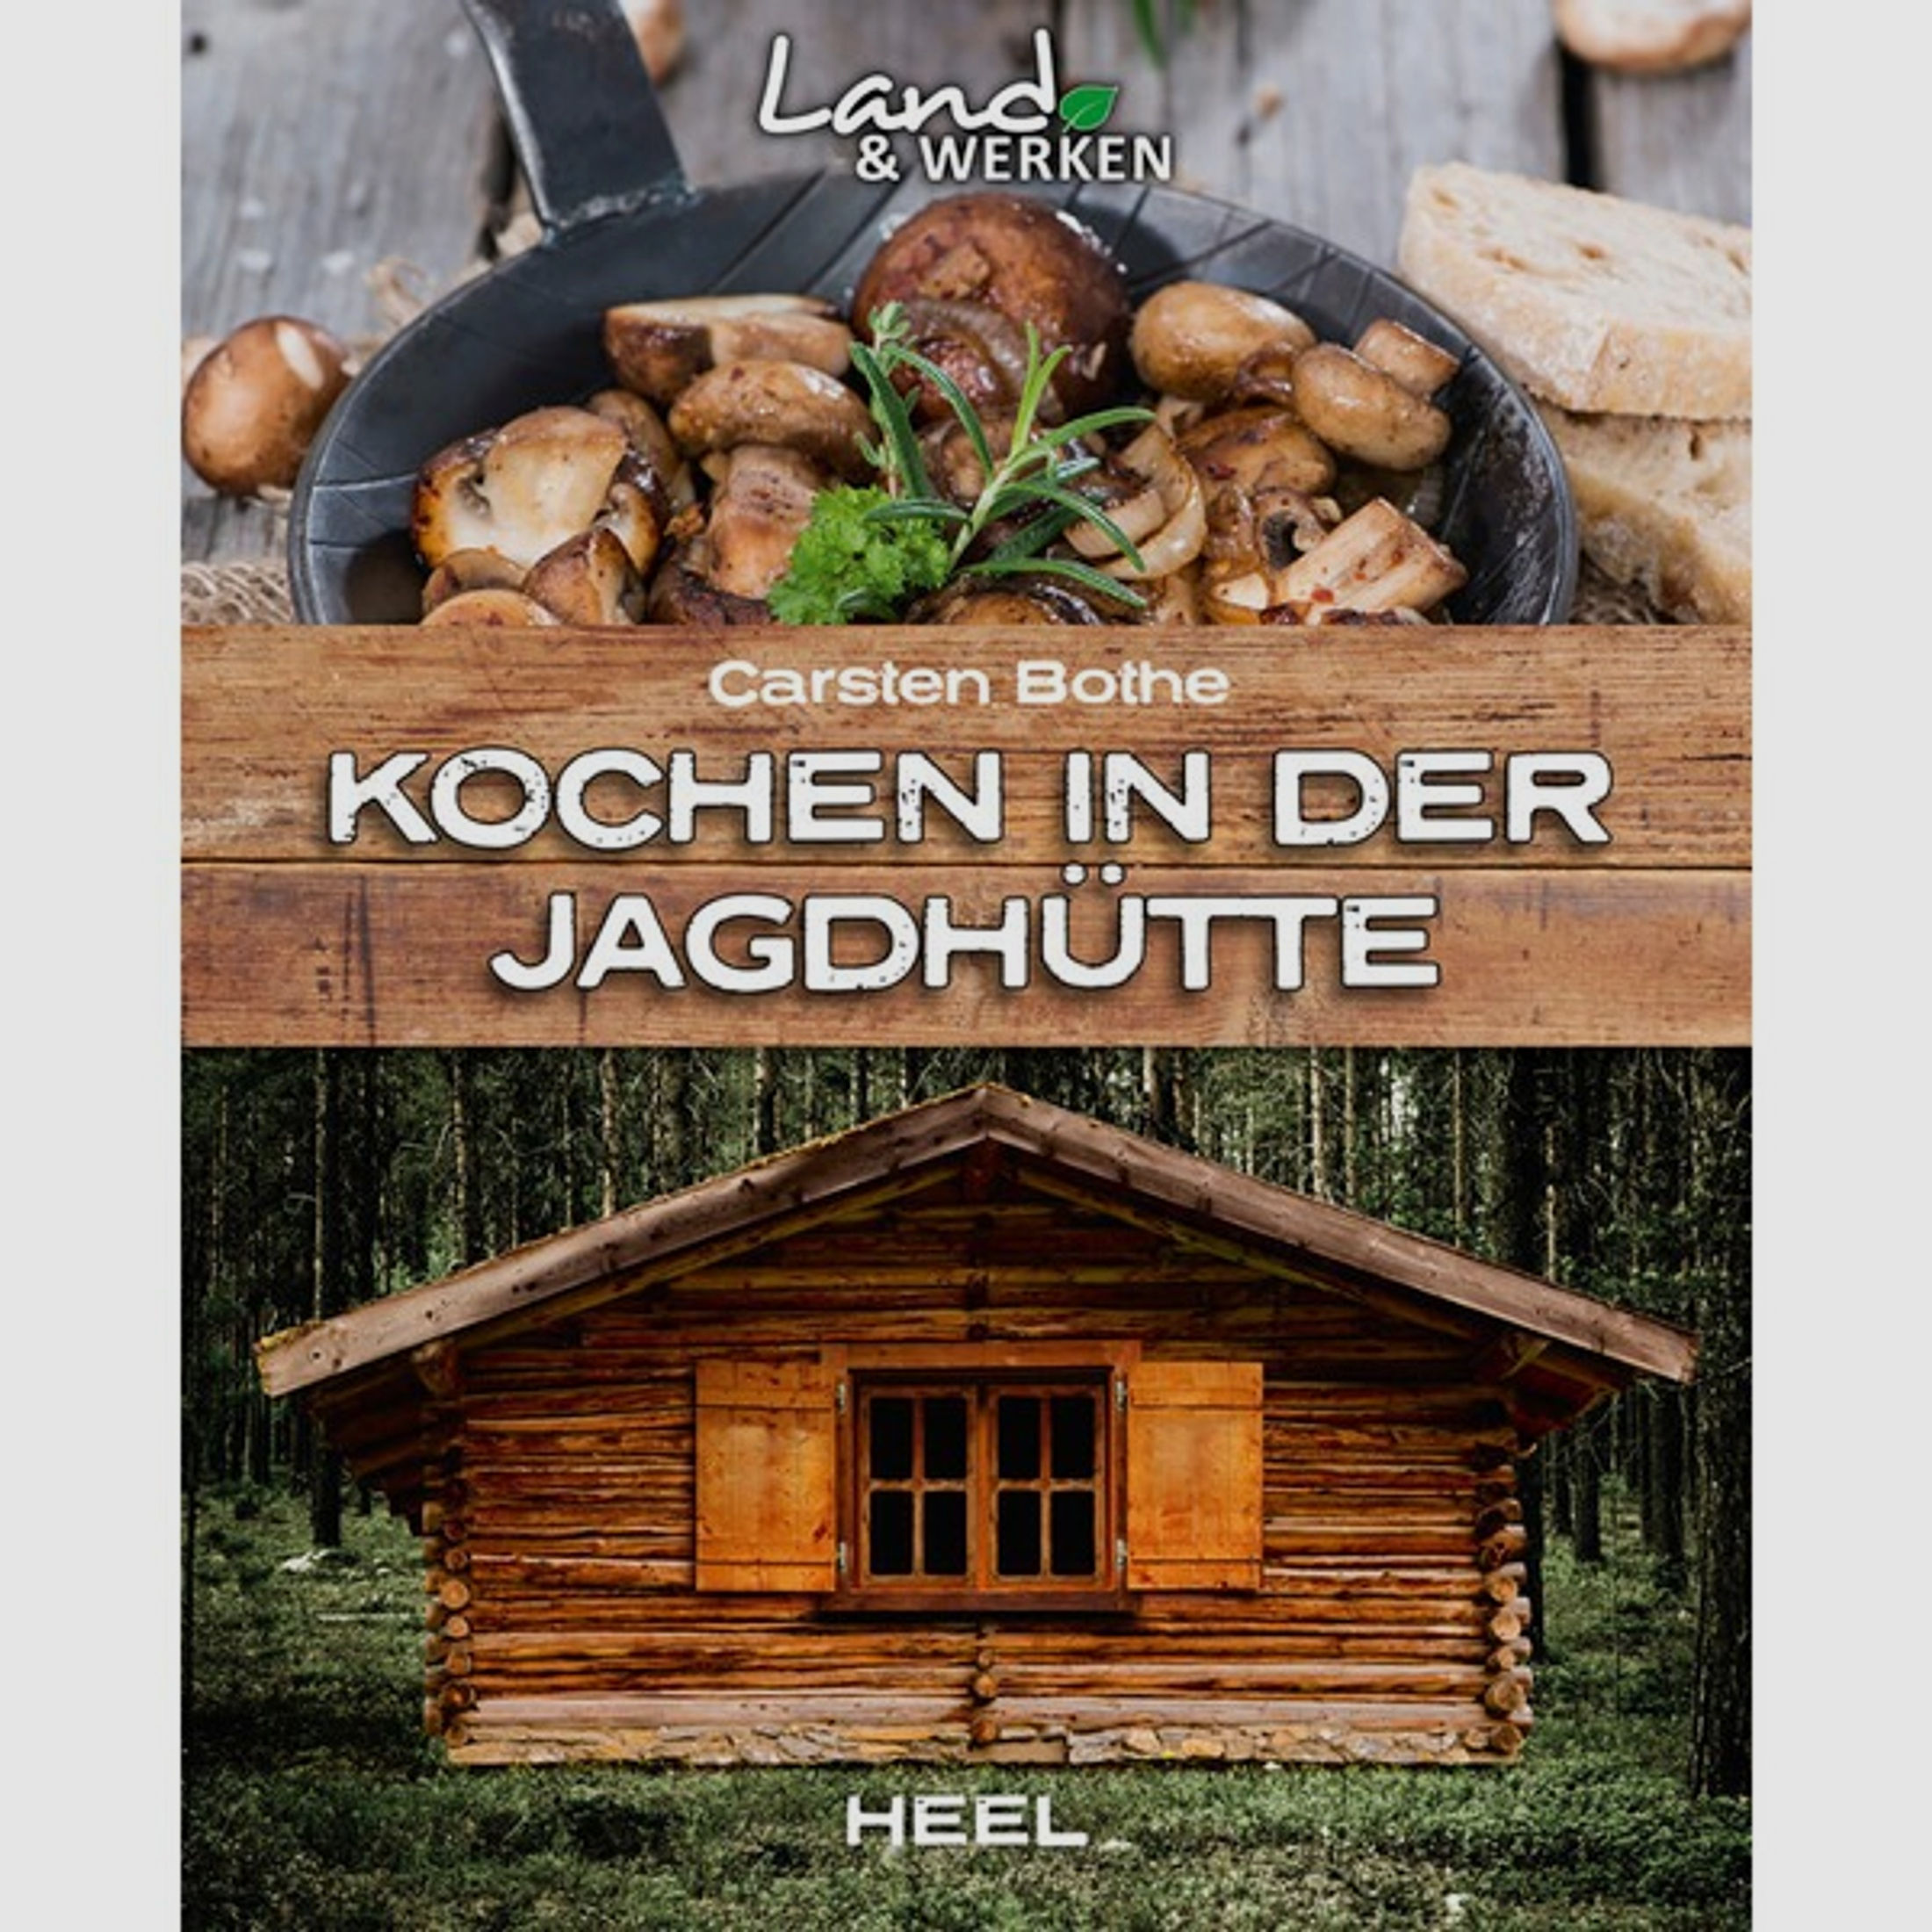 Kochen in der Jagdhütte - Neuware - 80 Seiten - Rezepte und Tipps für die Jagdhütte - Heel Verlag